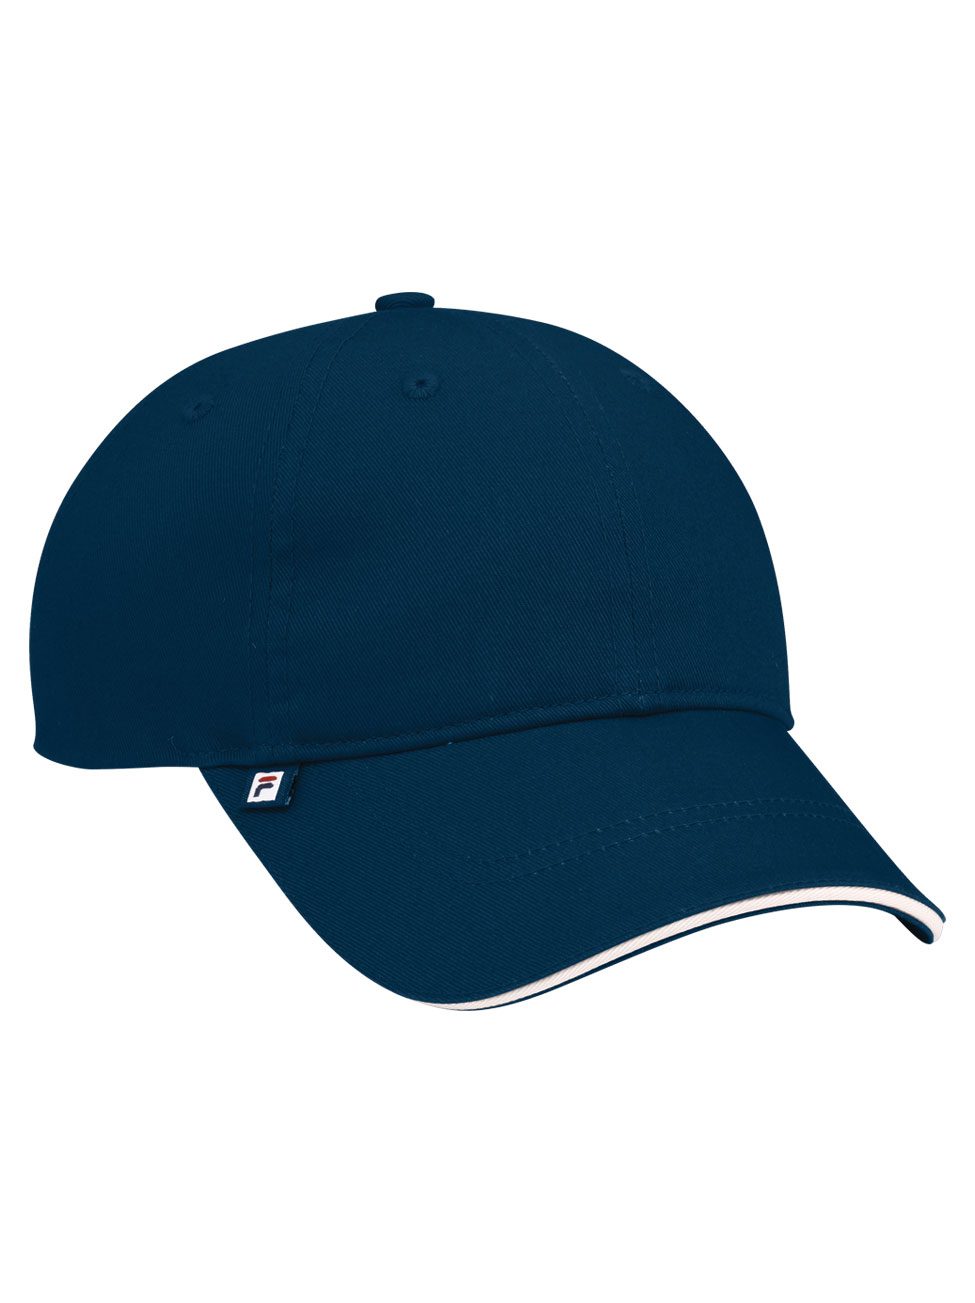 Fila Torino Baseball Hat #FA1010 Navy